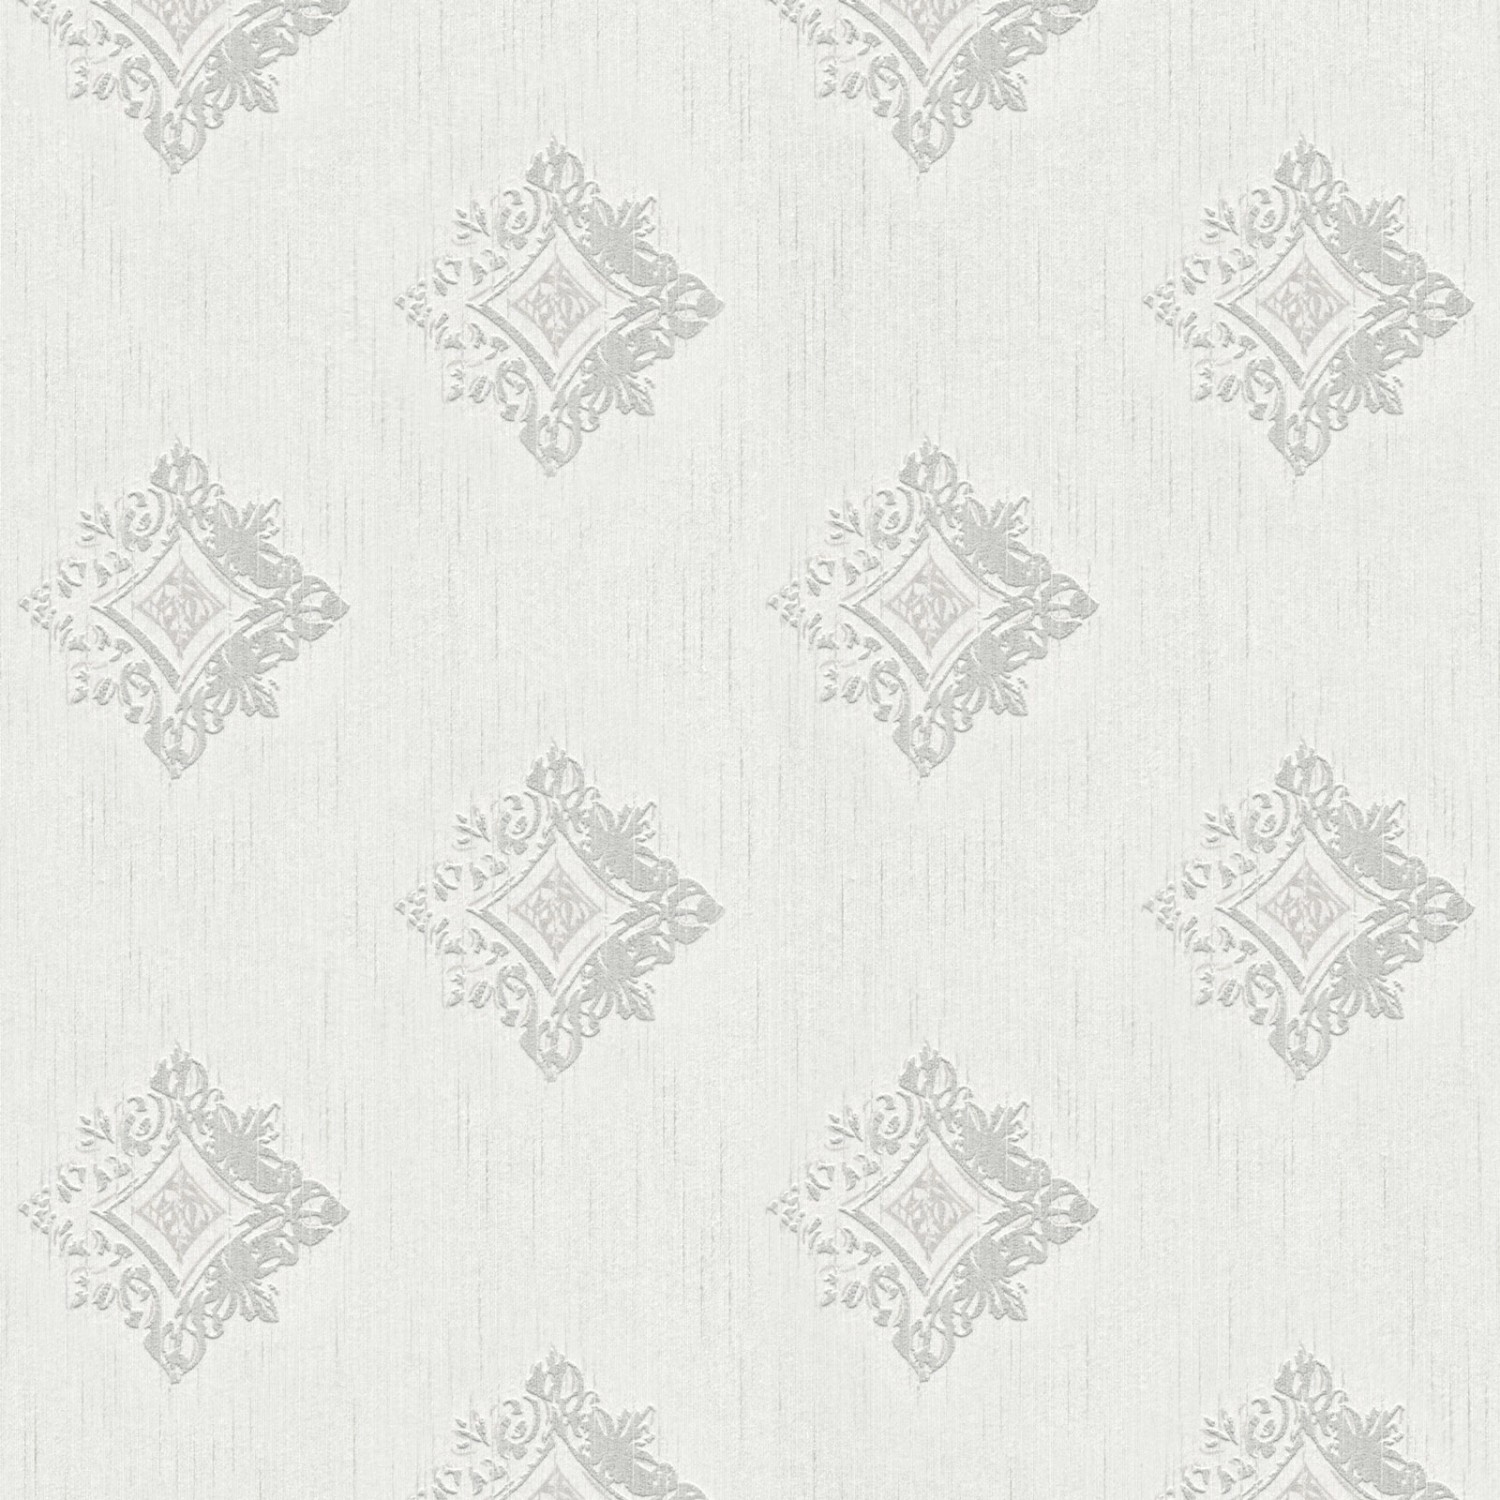 Bricoflor Ornament Textiltapete Weiß Grau Elegante Tapete mit Muster Edel Ideal für Esszimmer und Wohnzimmer Textil Vliestapete mit Ornamenten von Bricoflor